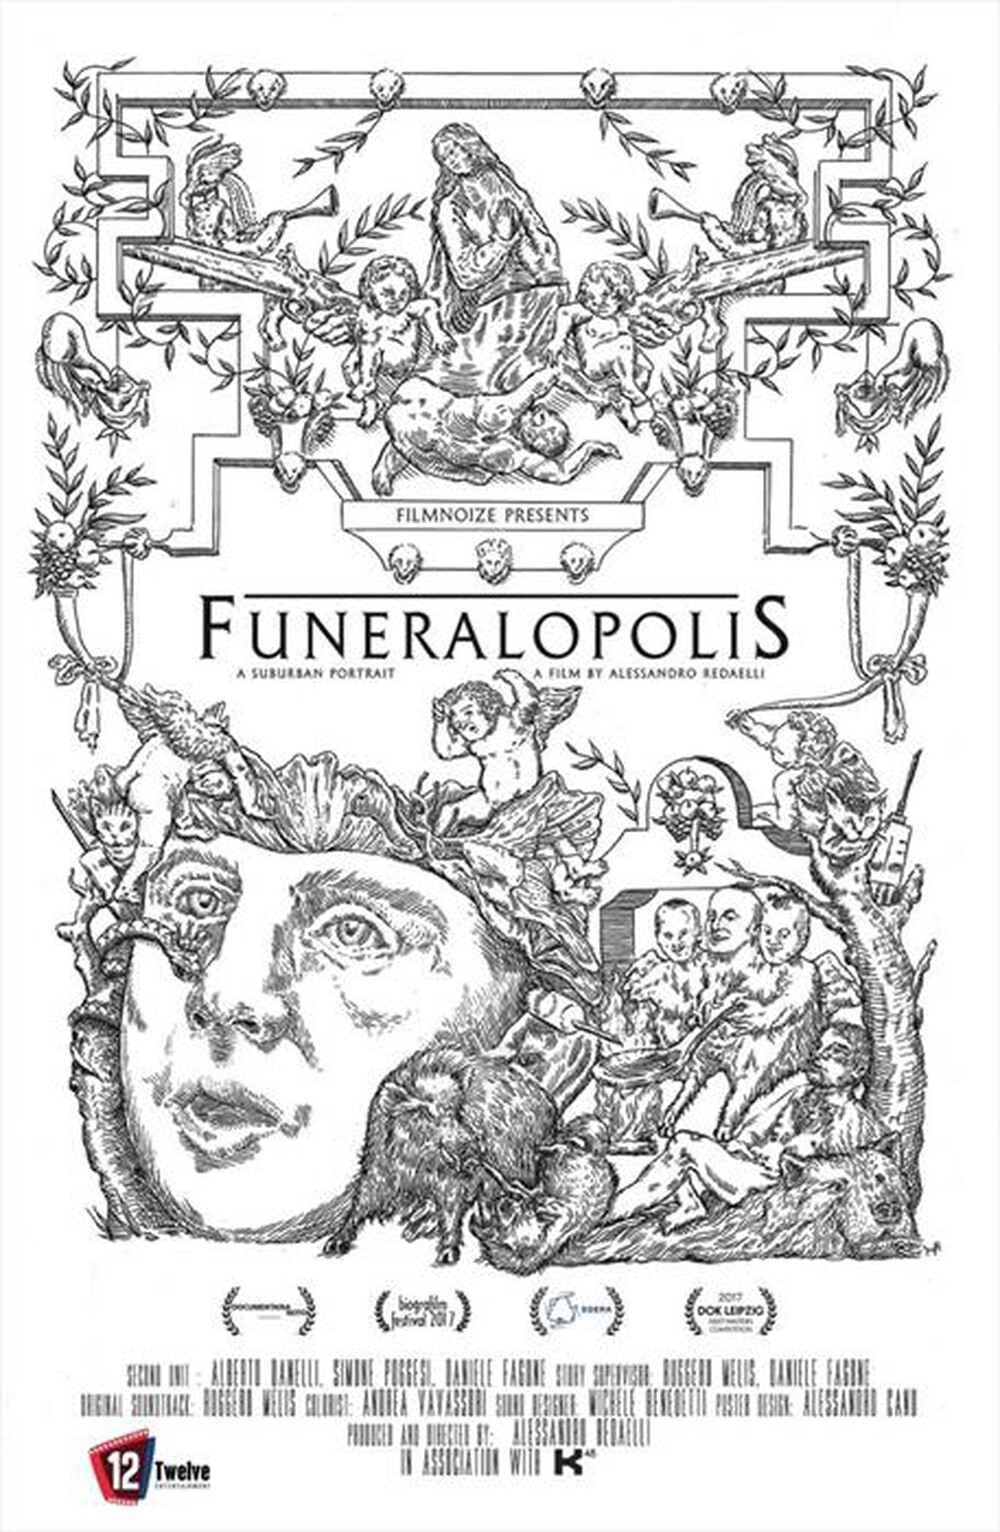 "Twelve Entertainment - Funeralopolis - A Suburban Portrait"